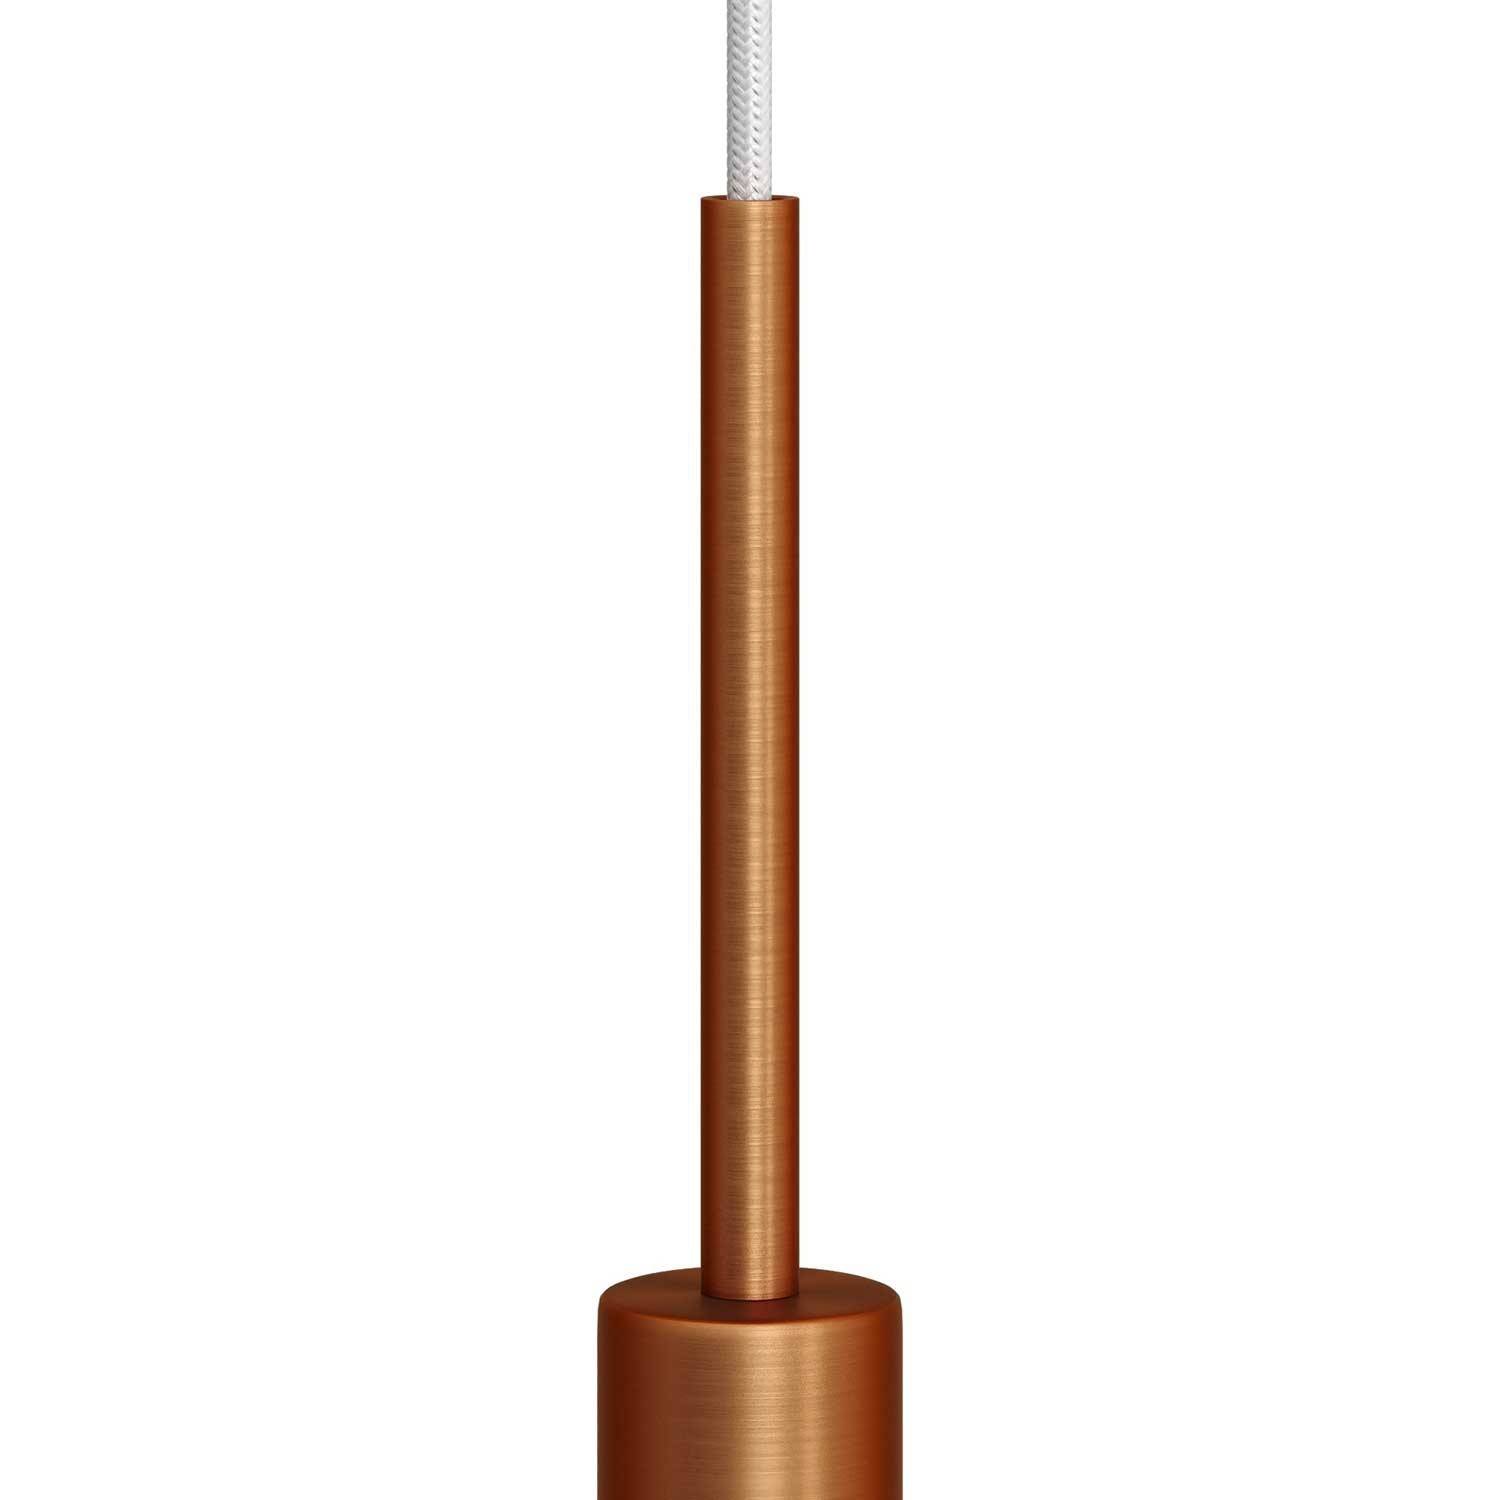 Μεταλλικό στήριγμα καλωδίου 15 cm μαζί με μαστό, παξιμάδι και ροδέλα